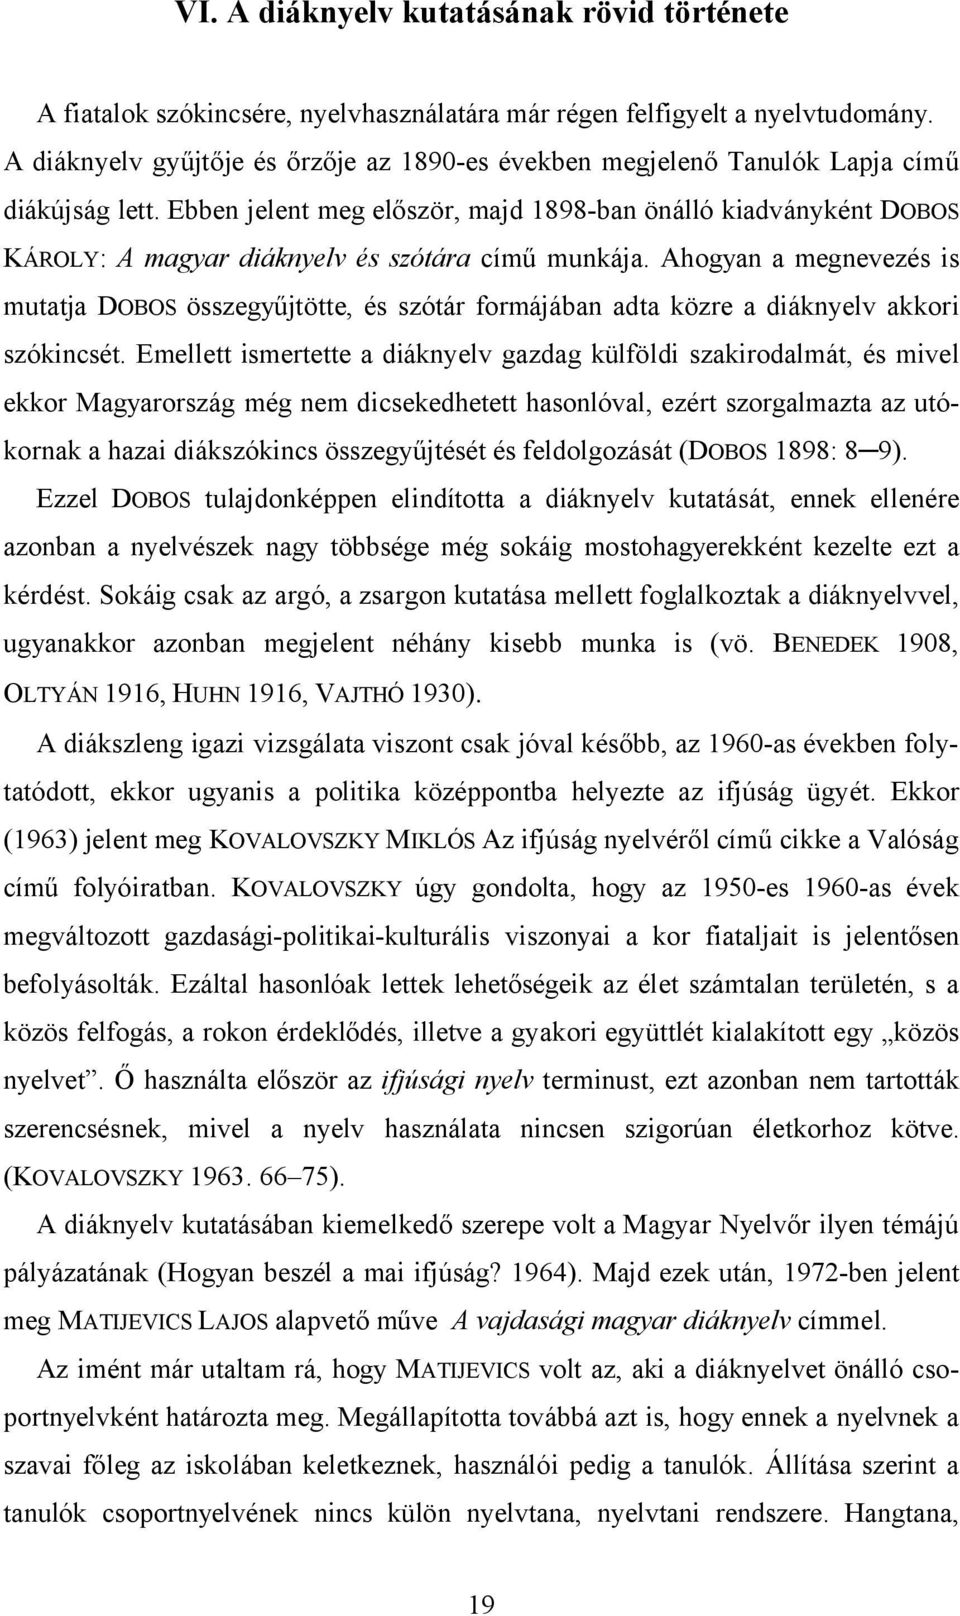 Ebben jelent meg először, majd 1898-ban önálló kiadványként DOBOS KÁROLY: A magyar diáknyelv és szótára című munkája.